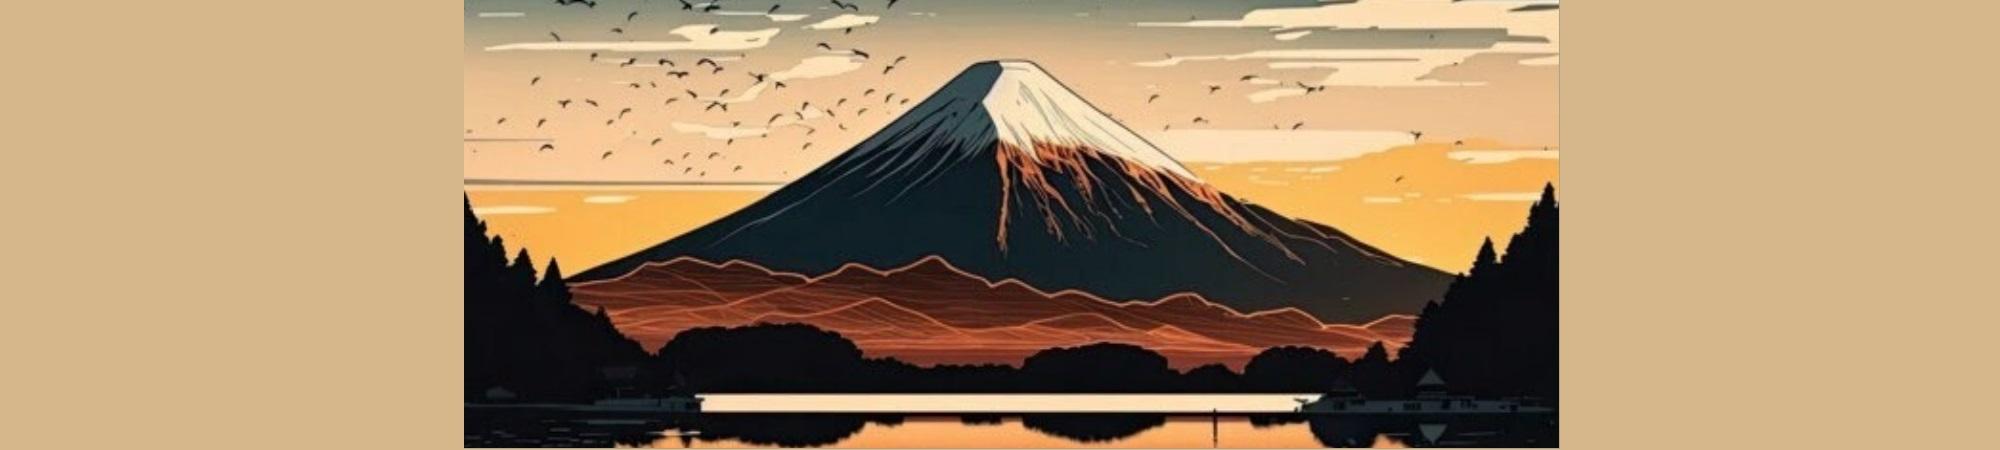 Mt Fuji art brown colors